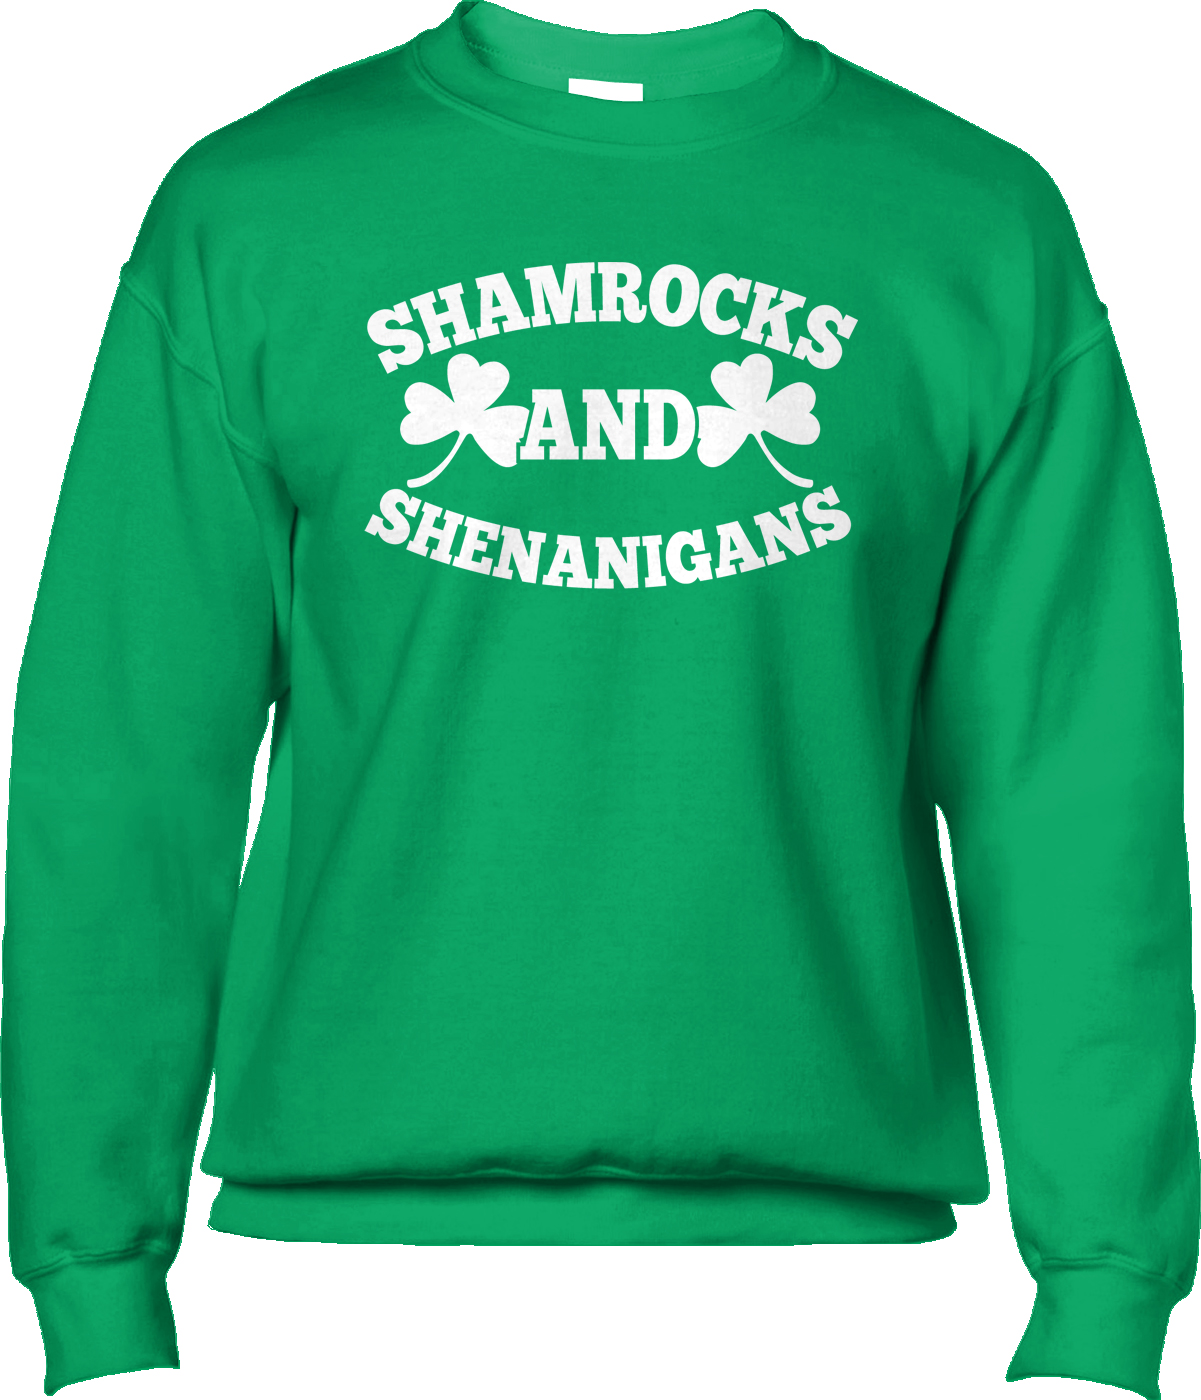 Shamrocks & Shenanigans Crew Neck Sweatshirt Patrick's Day St